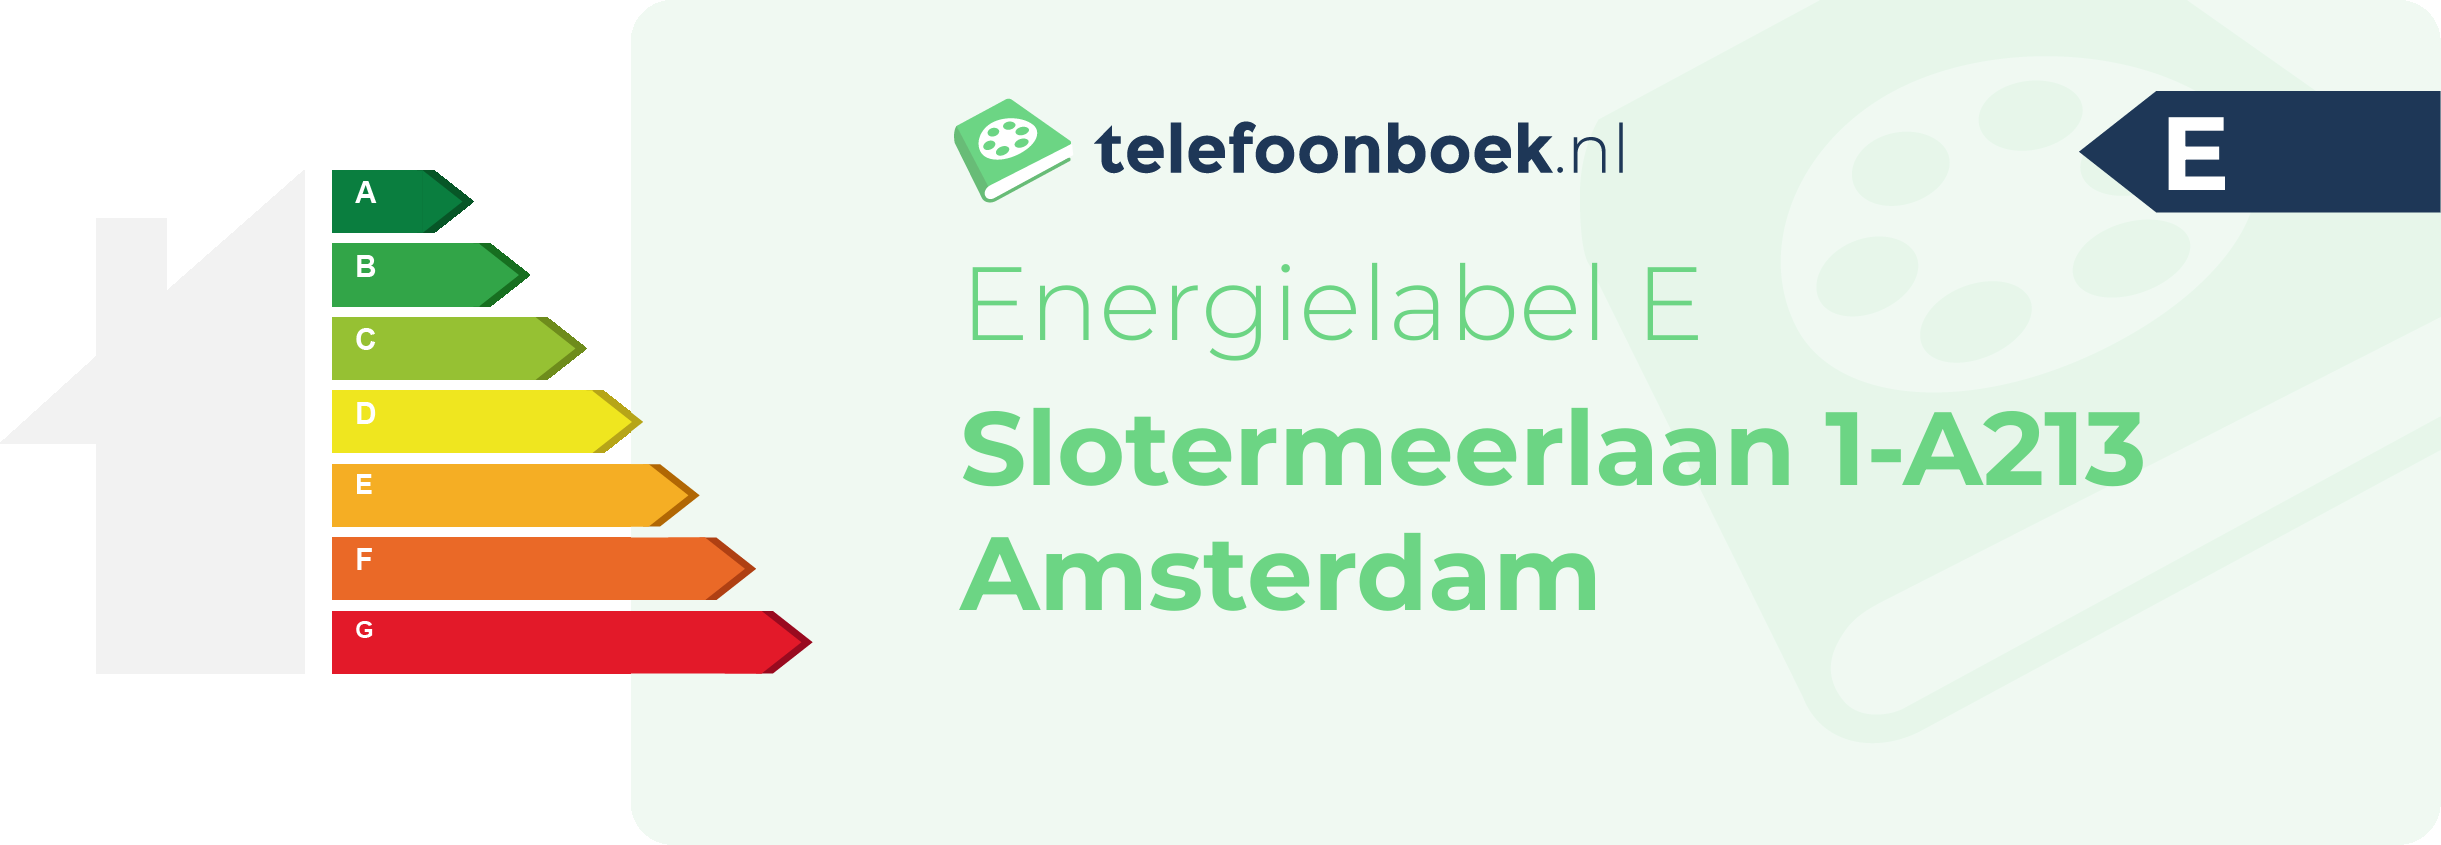 Energielabel Slotermeerlaan 1-A213 Amsterdam